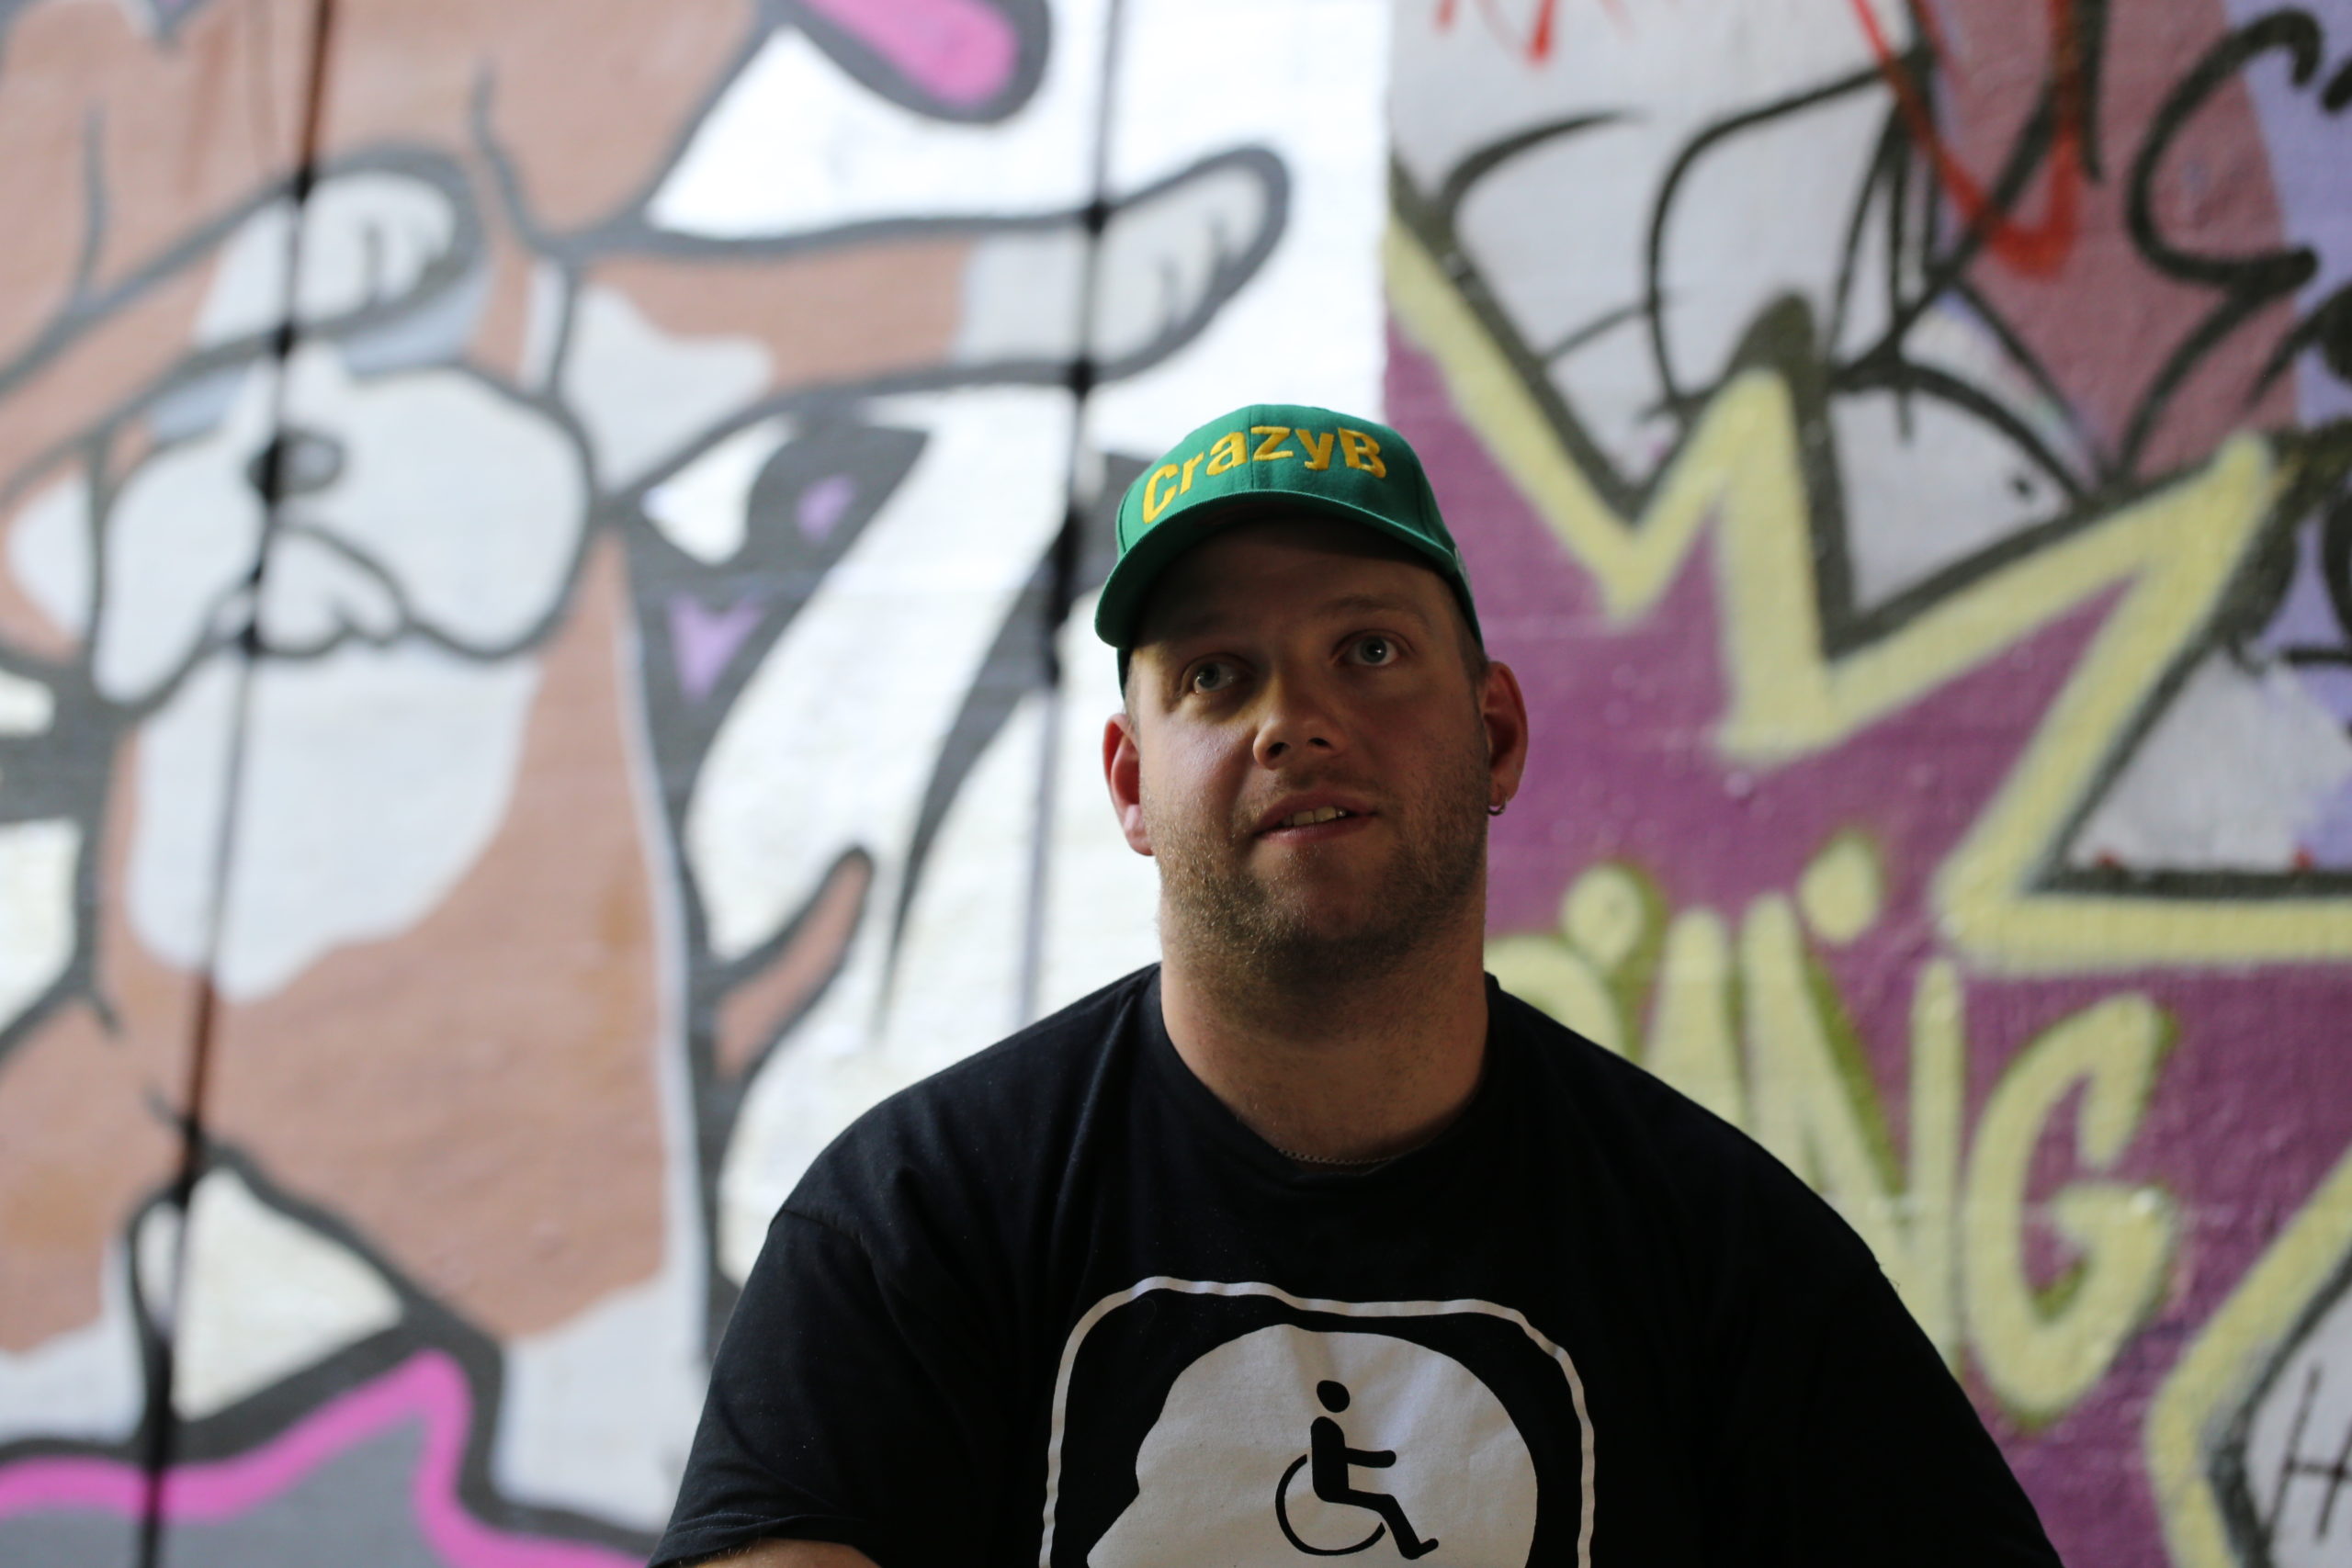 Wuppertaler Künstler: Im Gespräch mit CrazyB – HipHop außerhalb der Norm